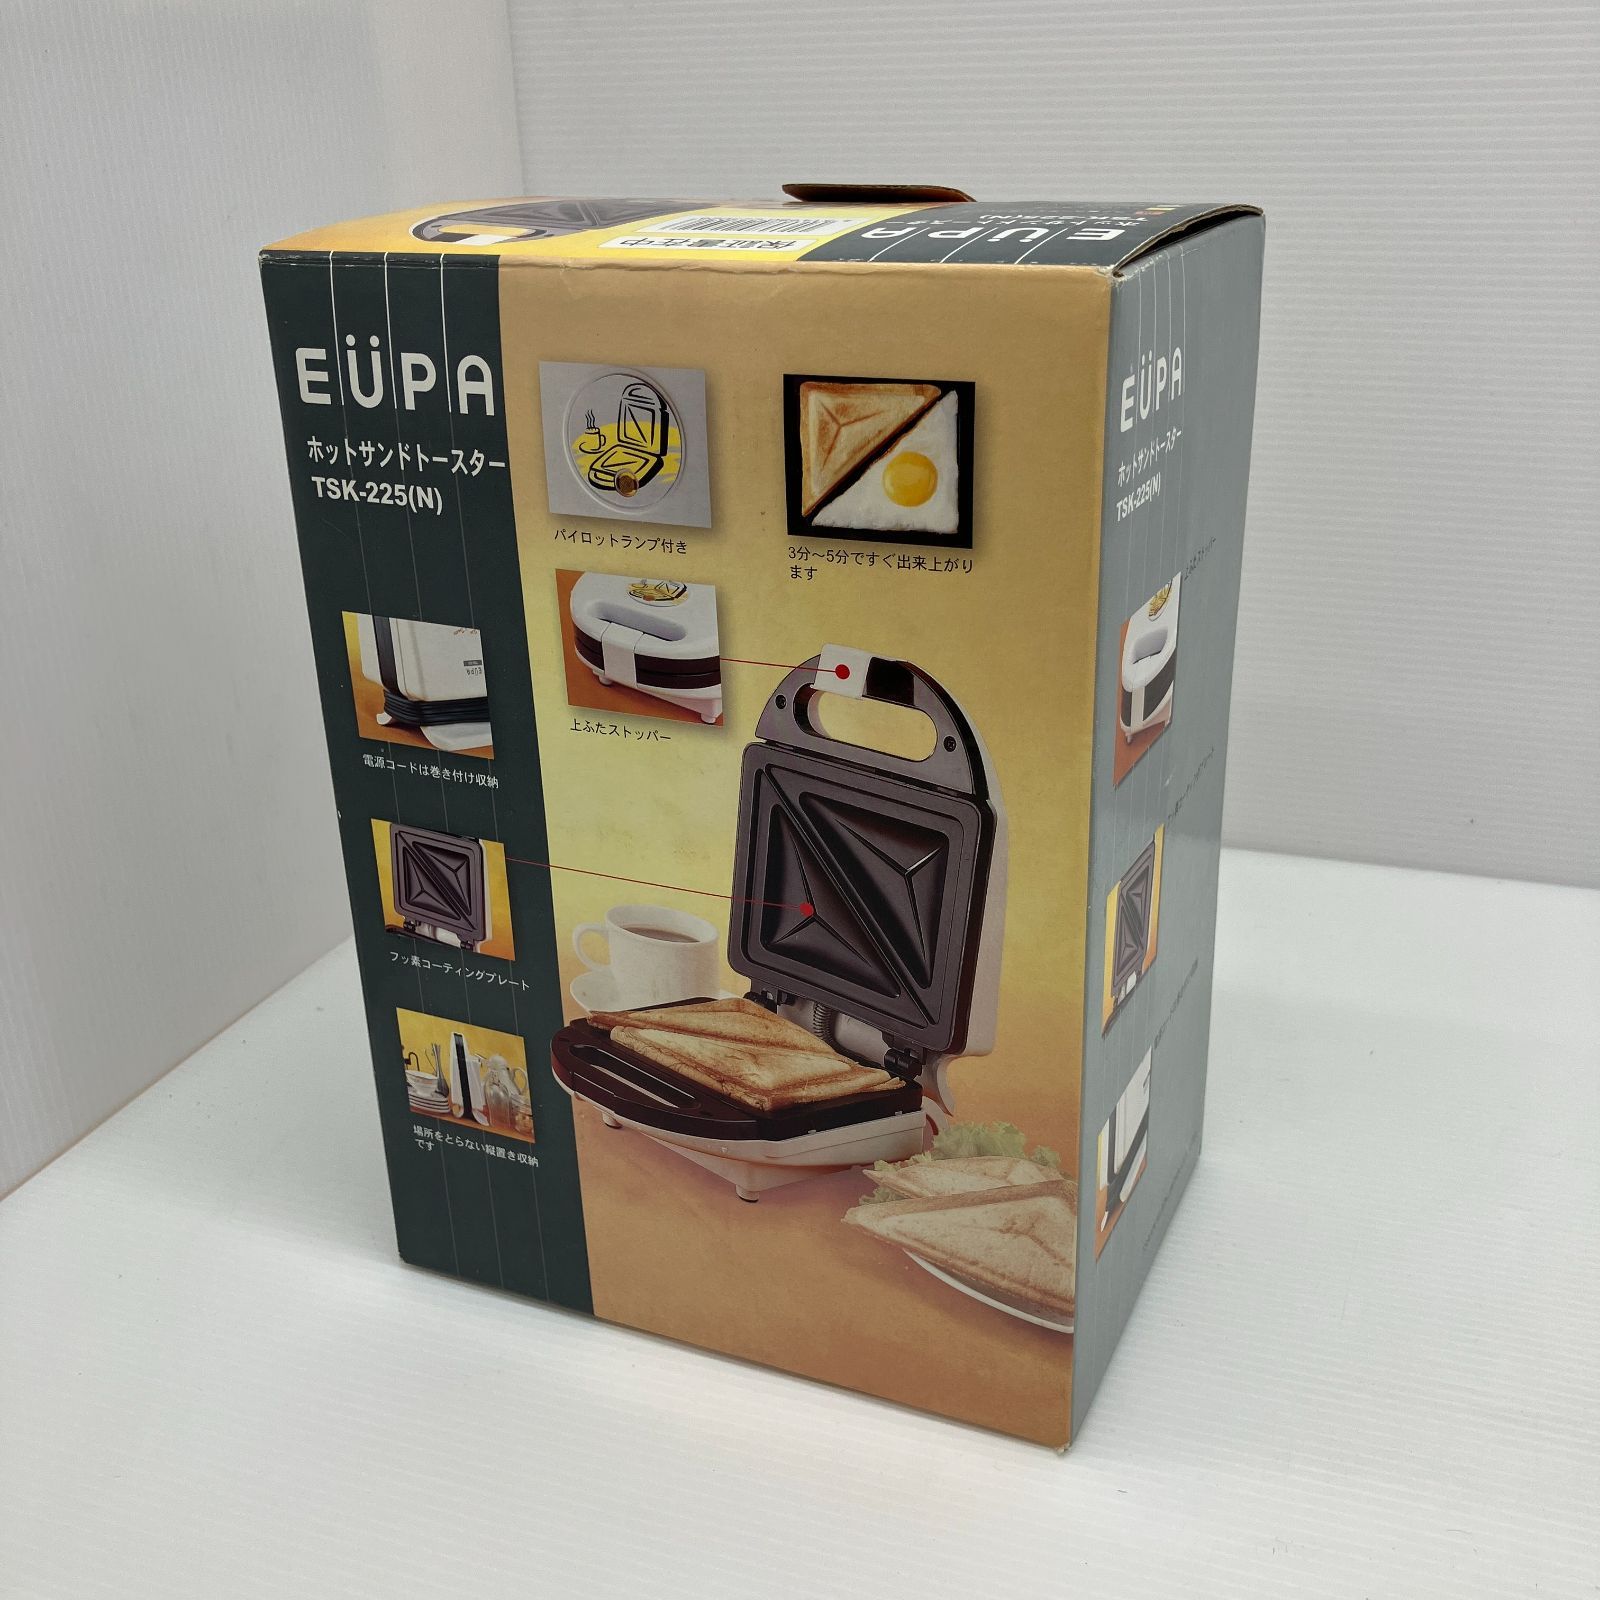 EUPA(ユーパ) ホットサンドトースター - 調理家電